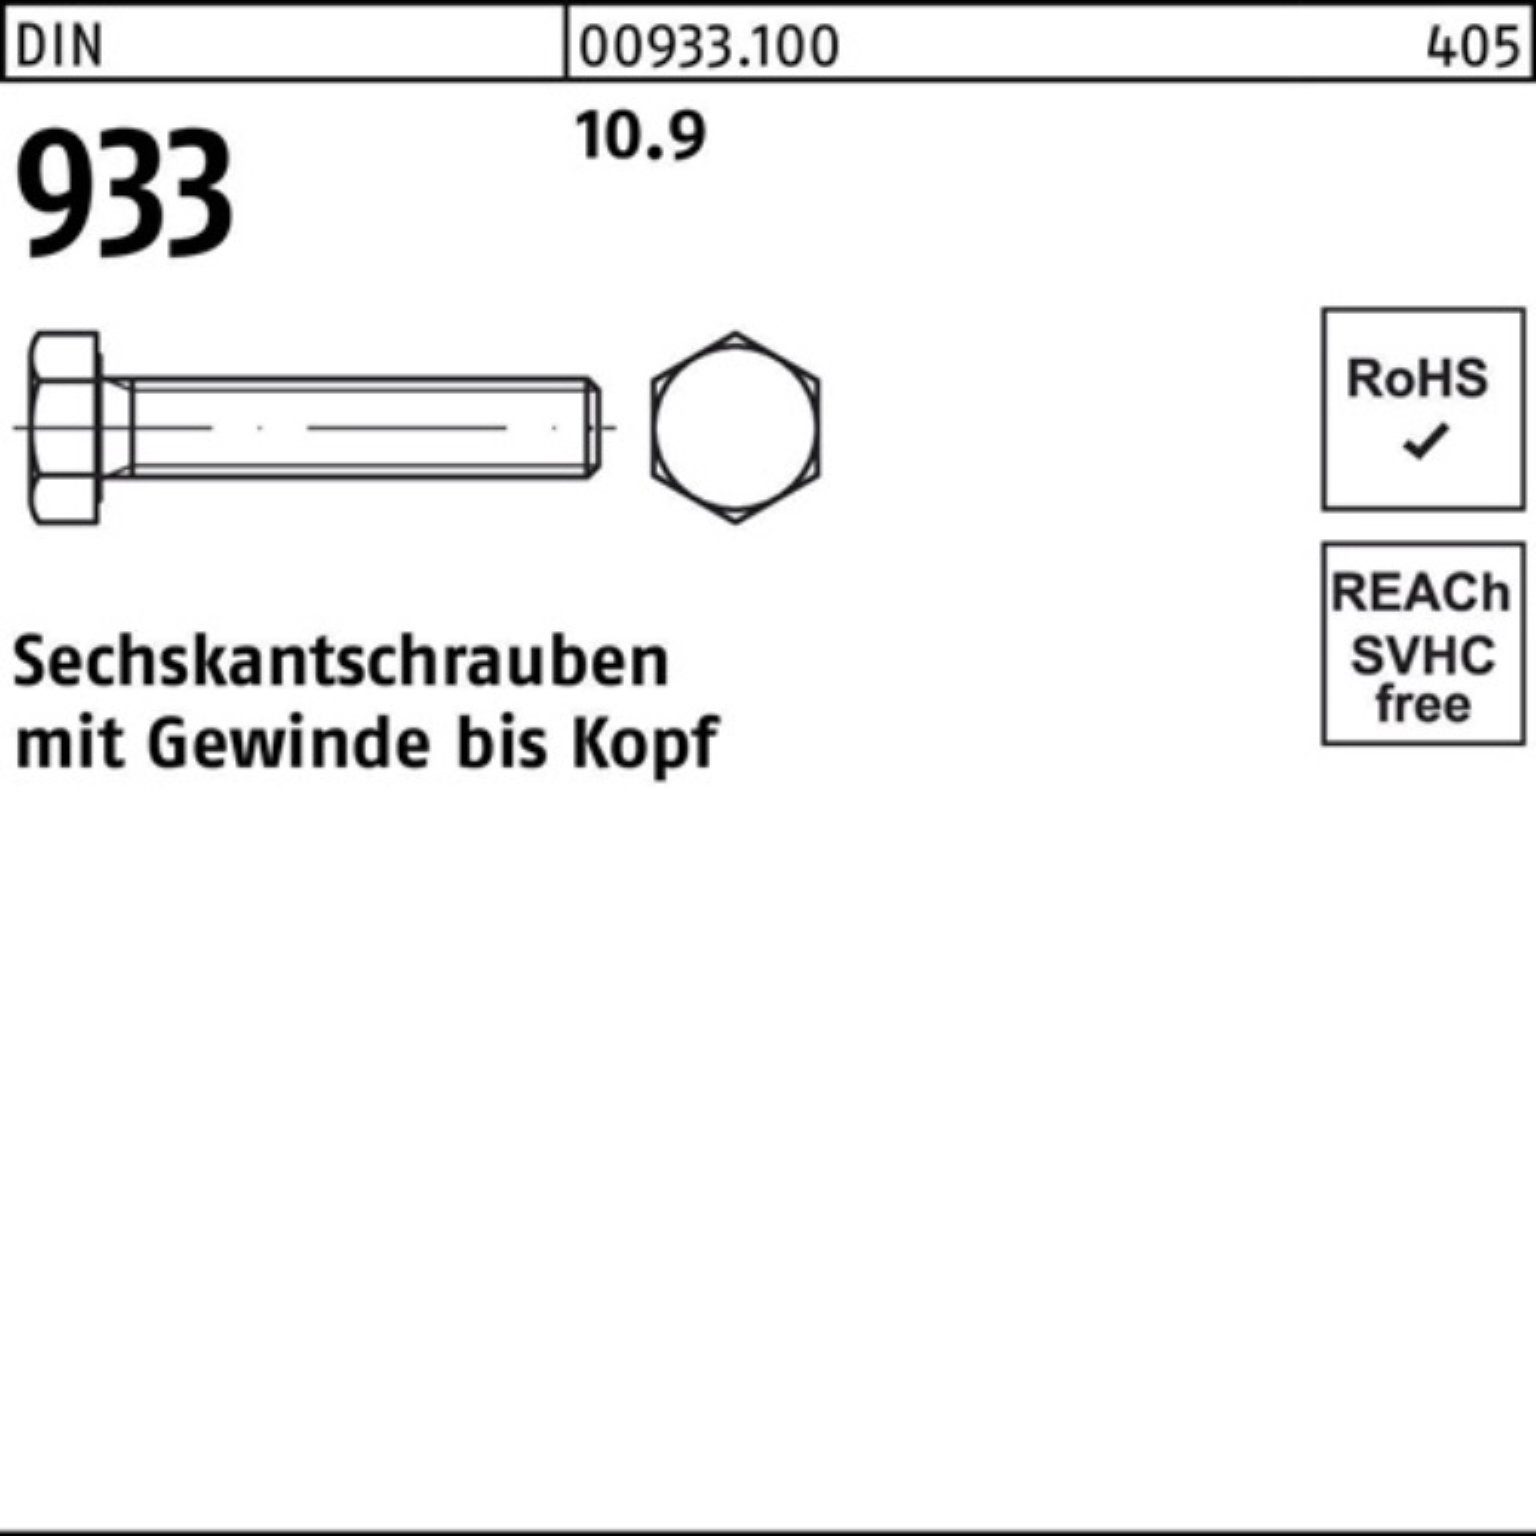 Reyher Sechskantschraube 100er 933 280 M24x 10.9 Stück VG Sechskantschraube 1 DIN DIN Pack 933